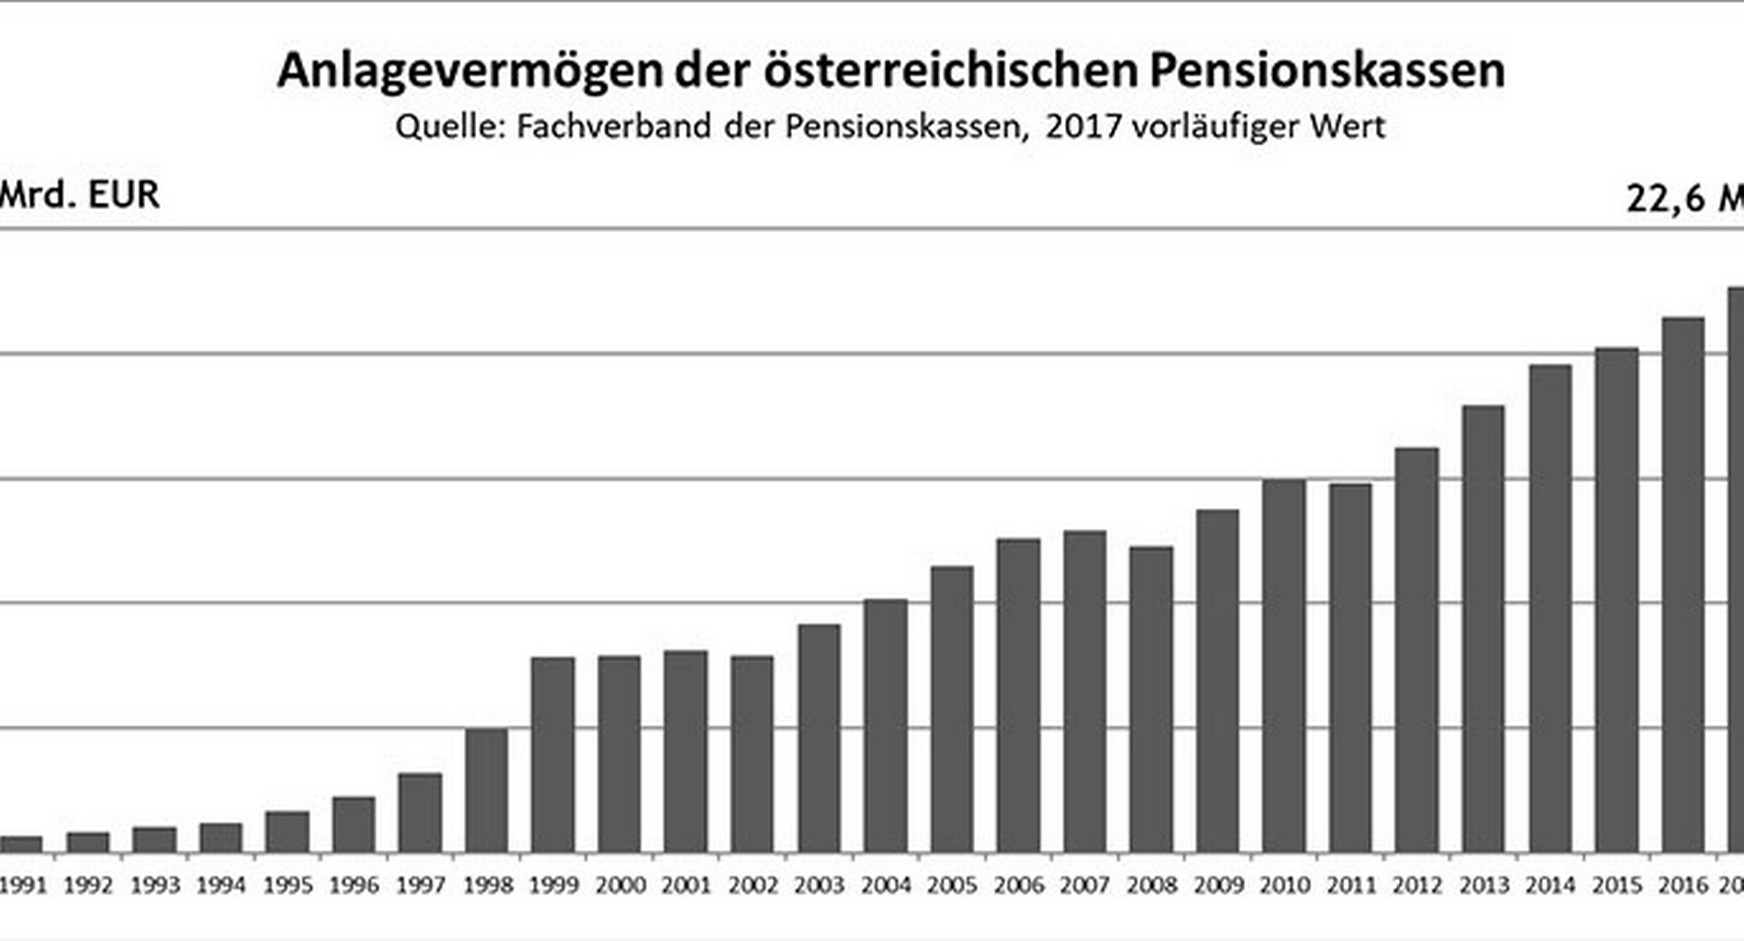 Balkendiagramm zum Anlagevermögen der österreichischen Pensionskassen im Jahresvergleich von 1991 bis 2017